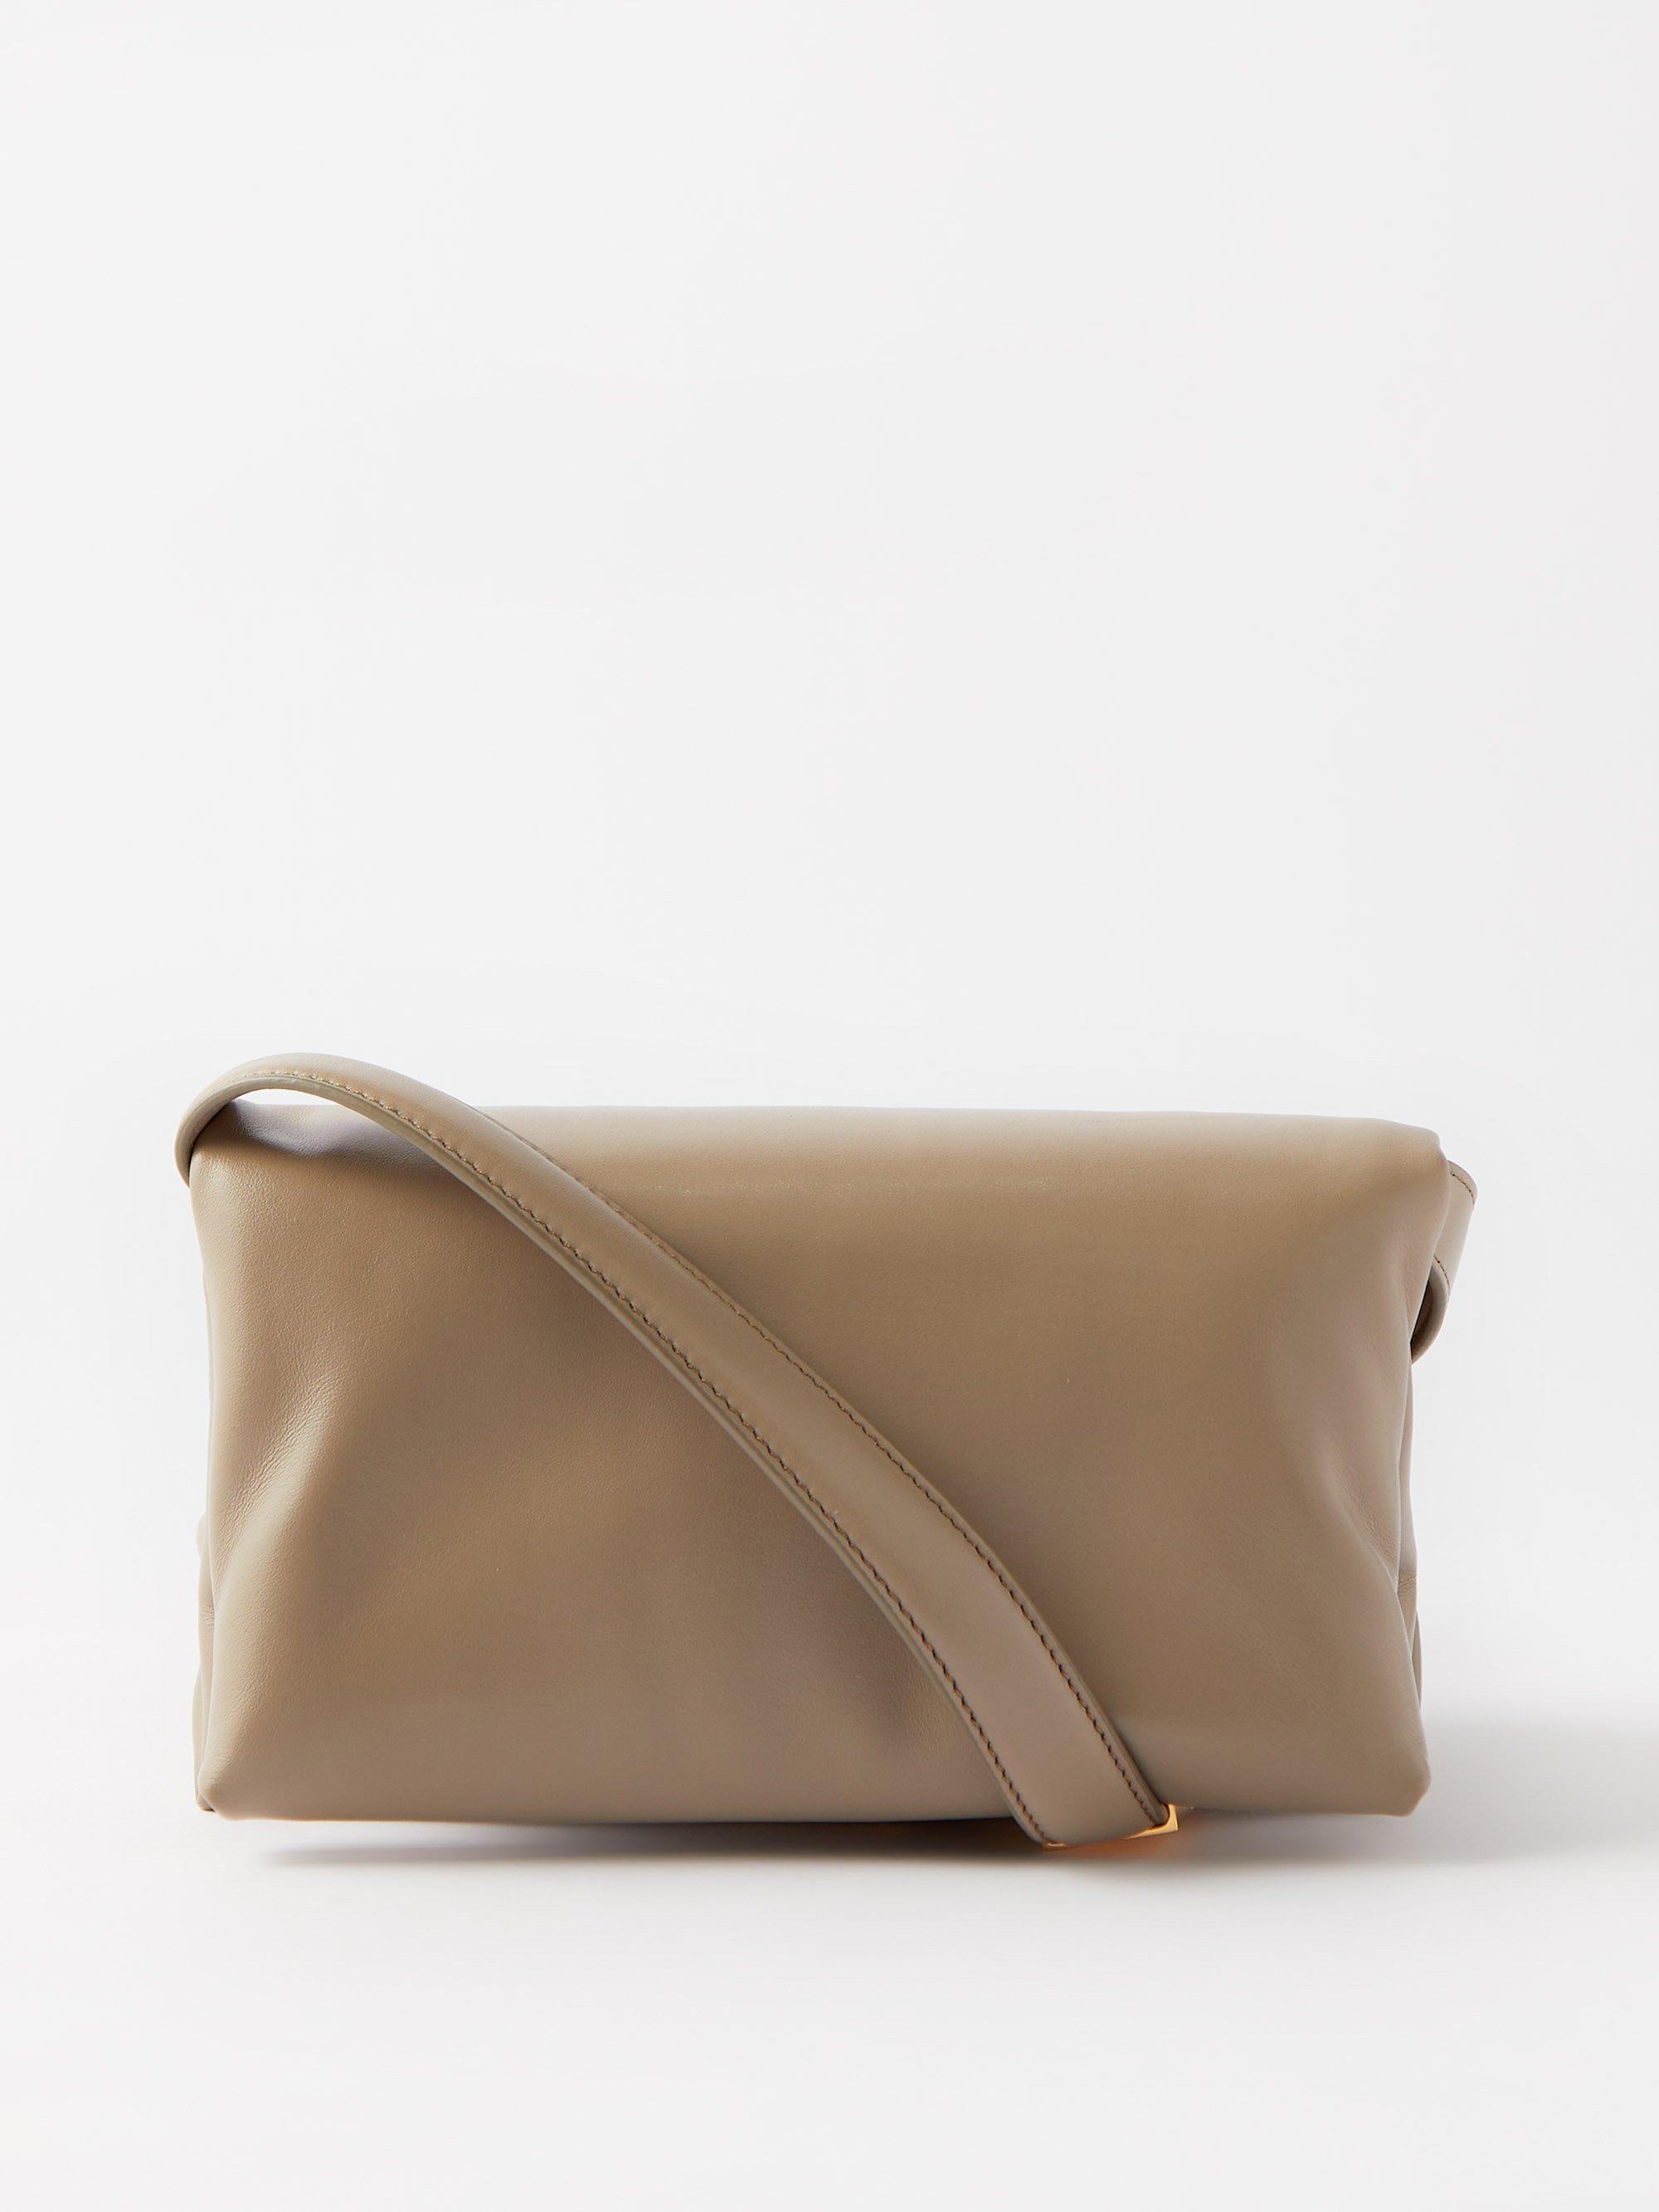 Prisma Padded Leather Shoulder Bag in Beige - Marni